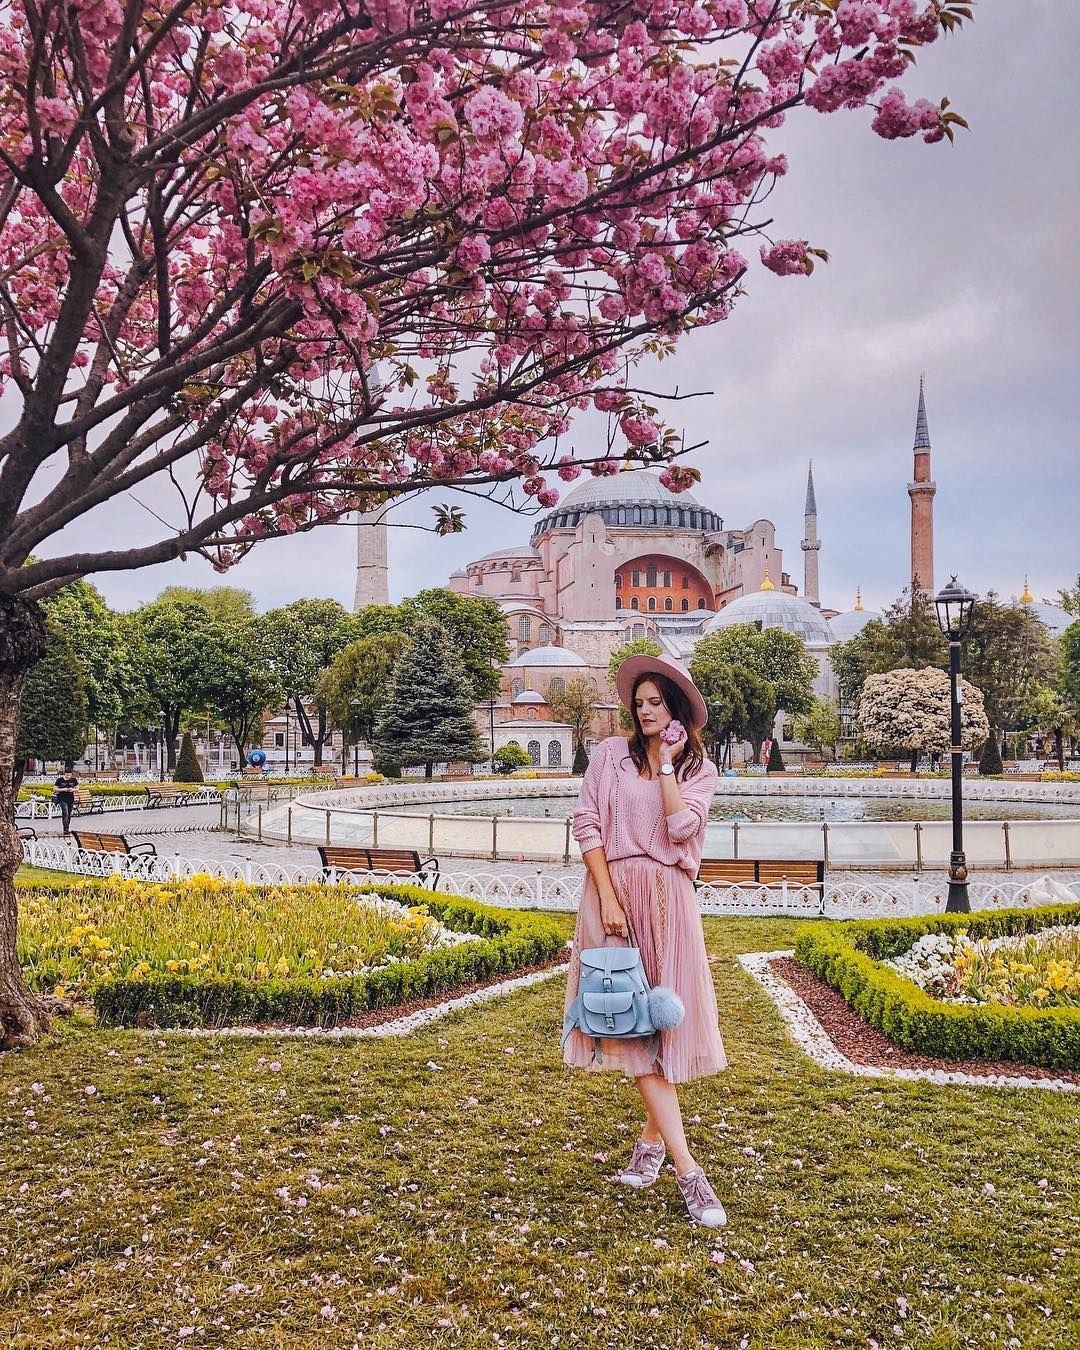 Стамбул в мае для туриста